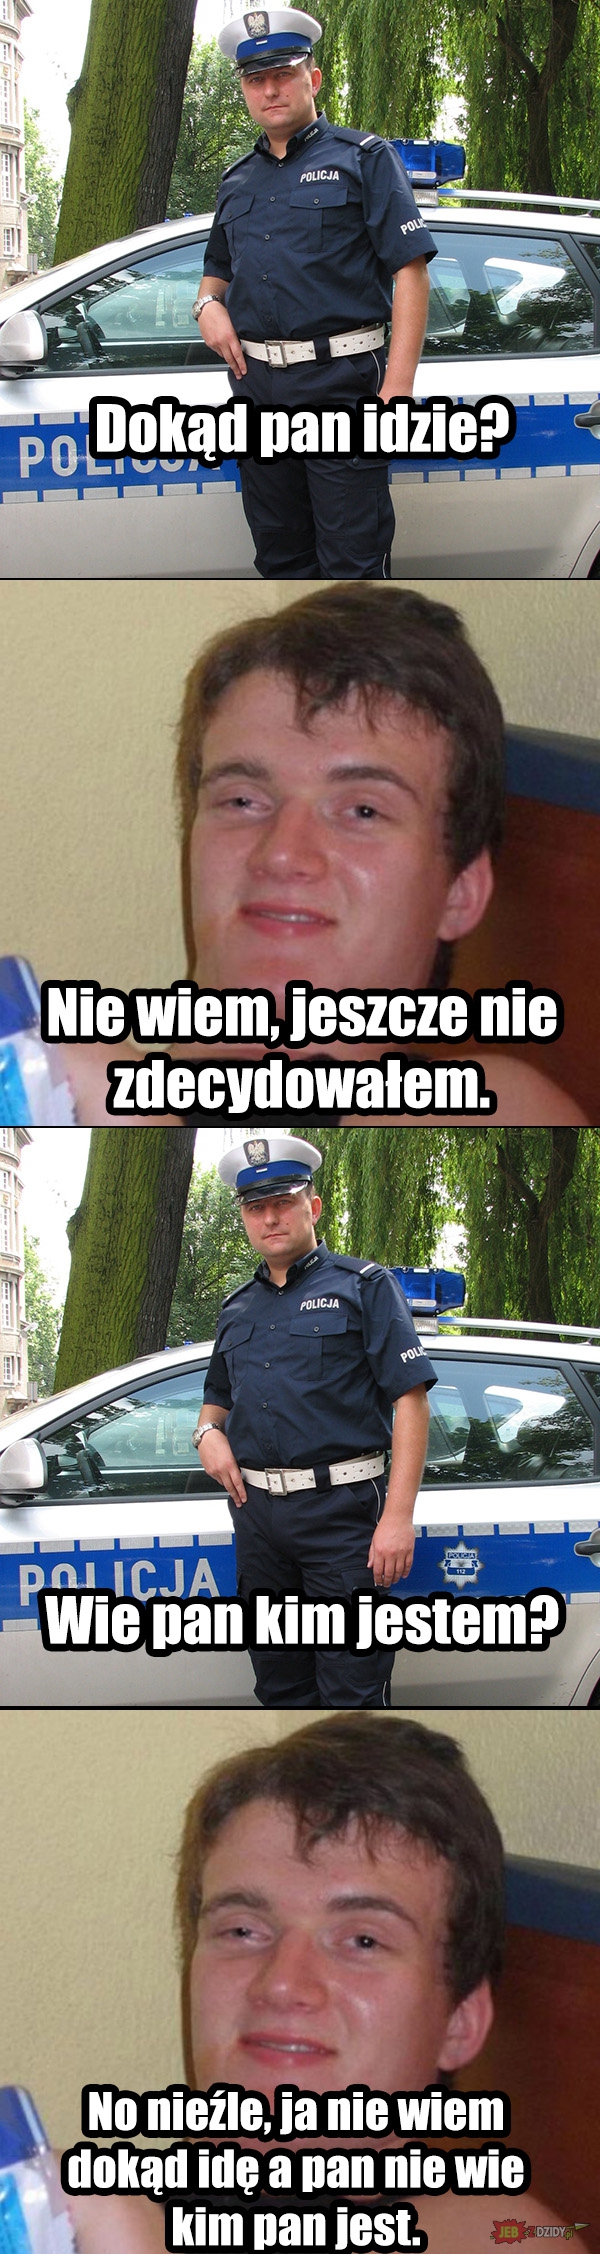 Zjarany Zbyszek kontra policjant Obrazki   